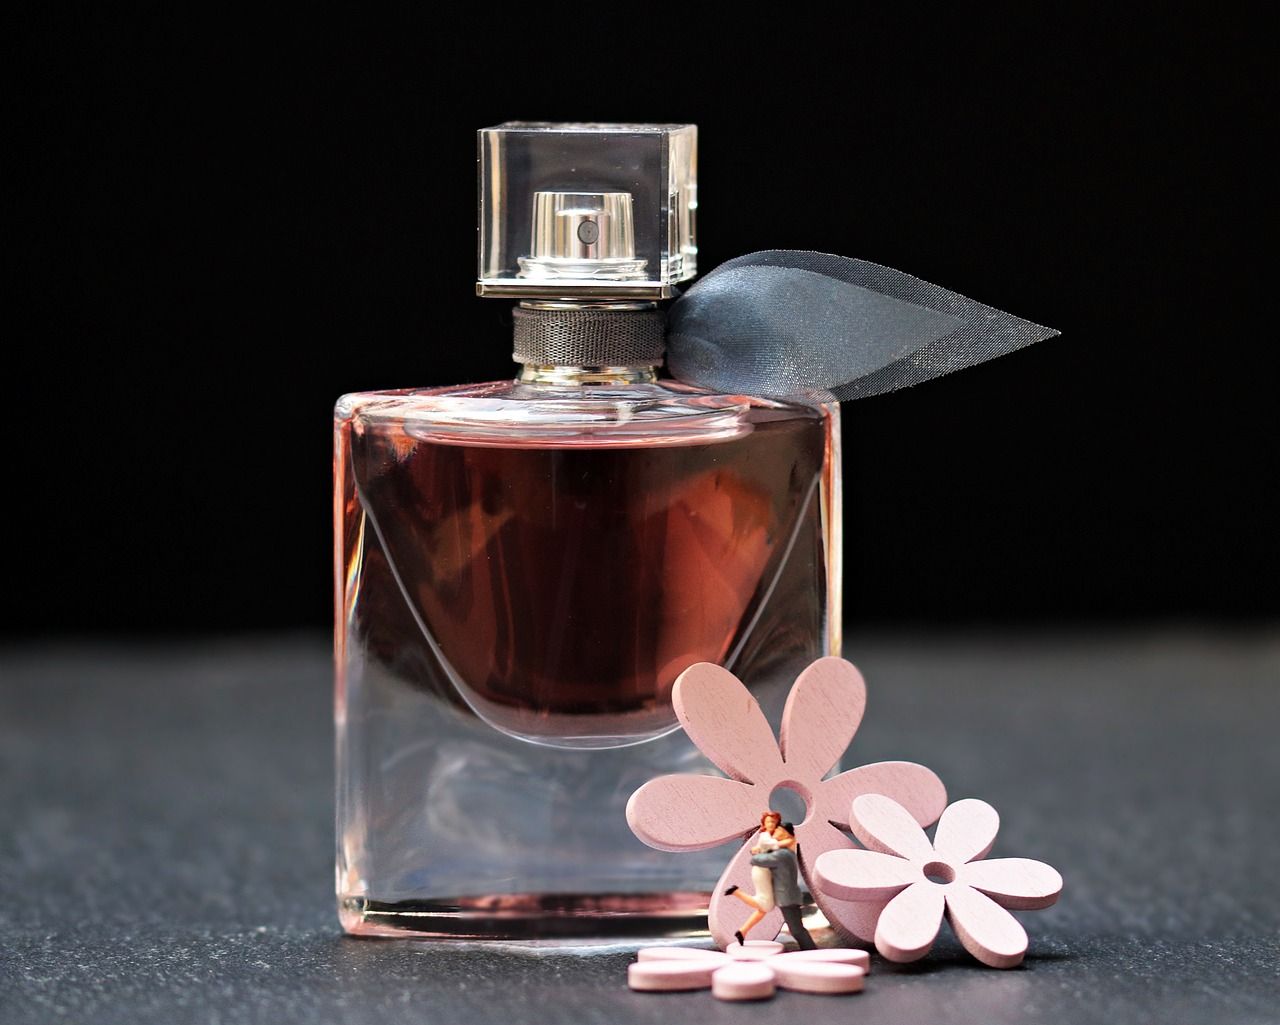 Kupuj mądrze: Jak kupować jakościowe perfumy za niewielką cenę?